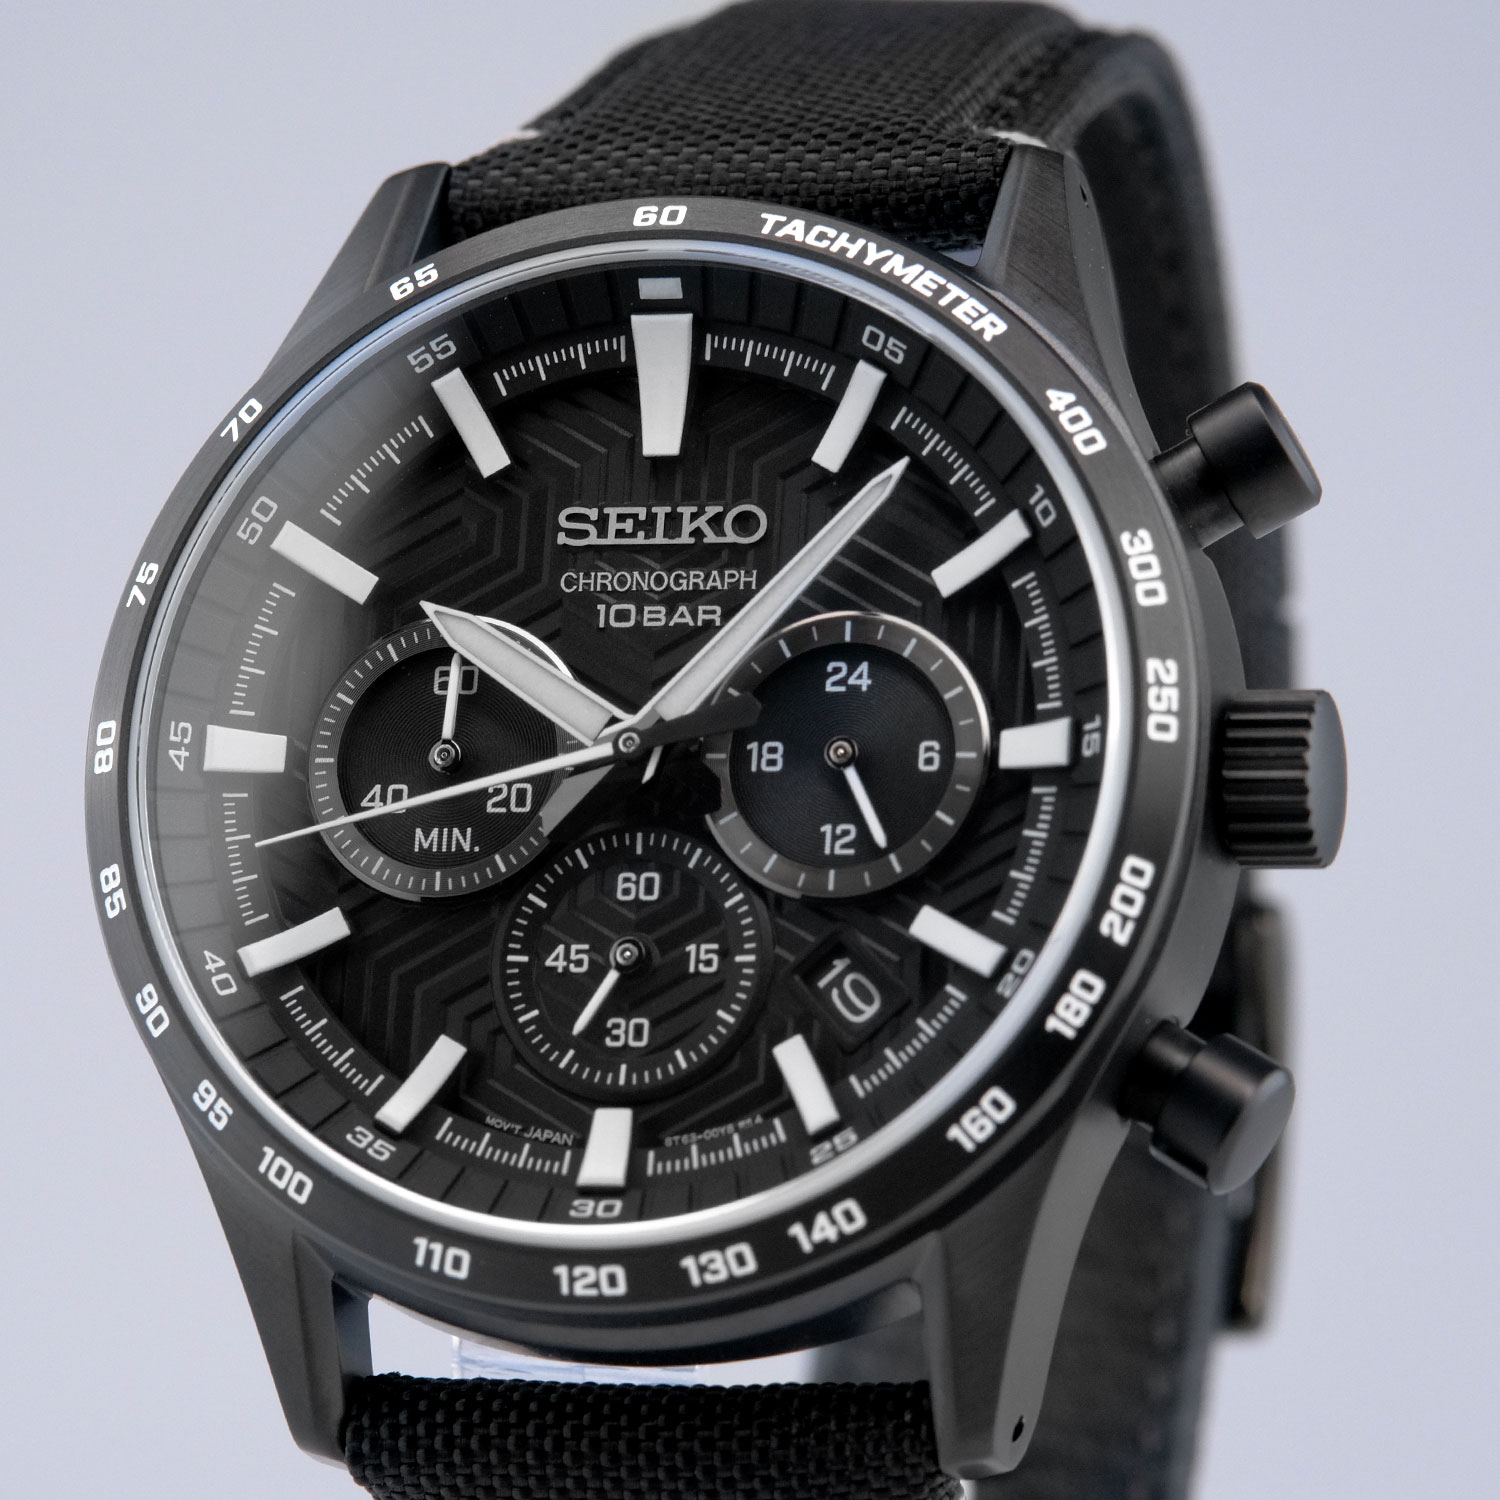 Часы Seiko SSB417P1 - купить мужские наручные часы в интернет-магазине  Bestwatch.ru. Цена, фото, характеристики. - с доставкой по